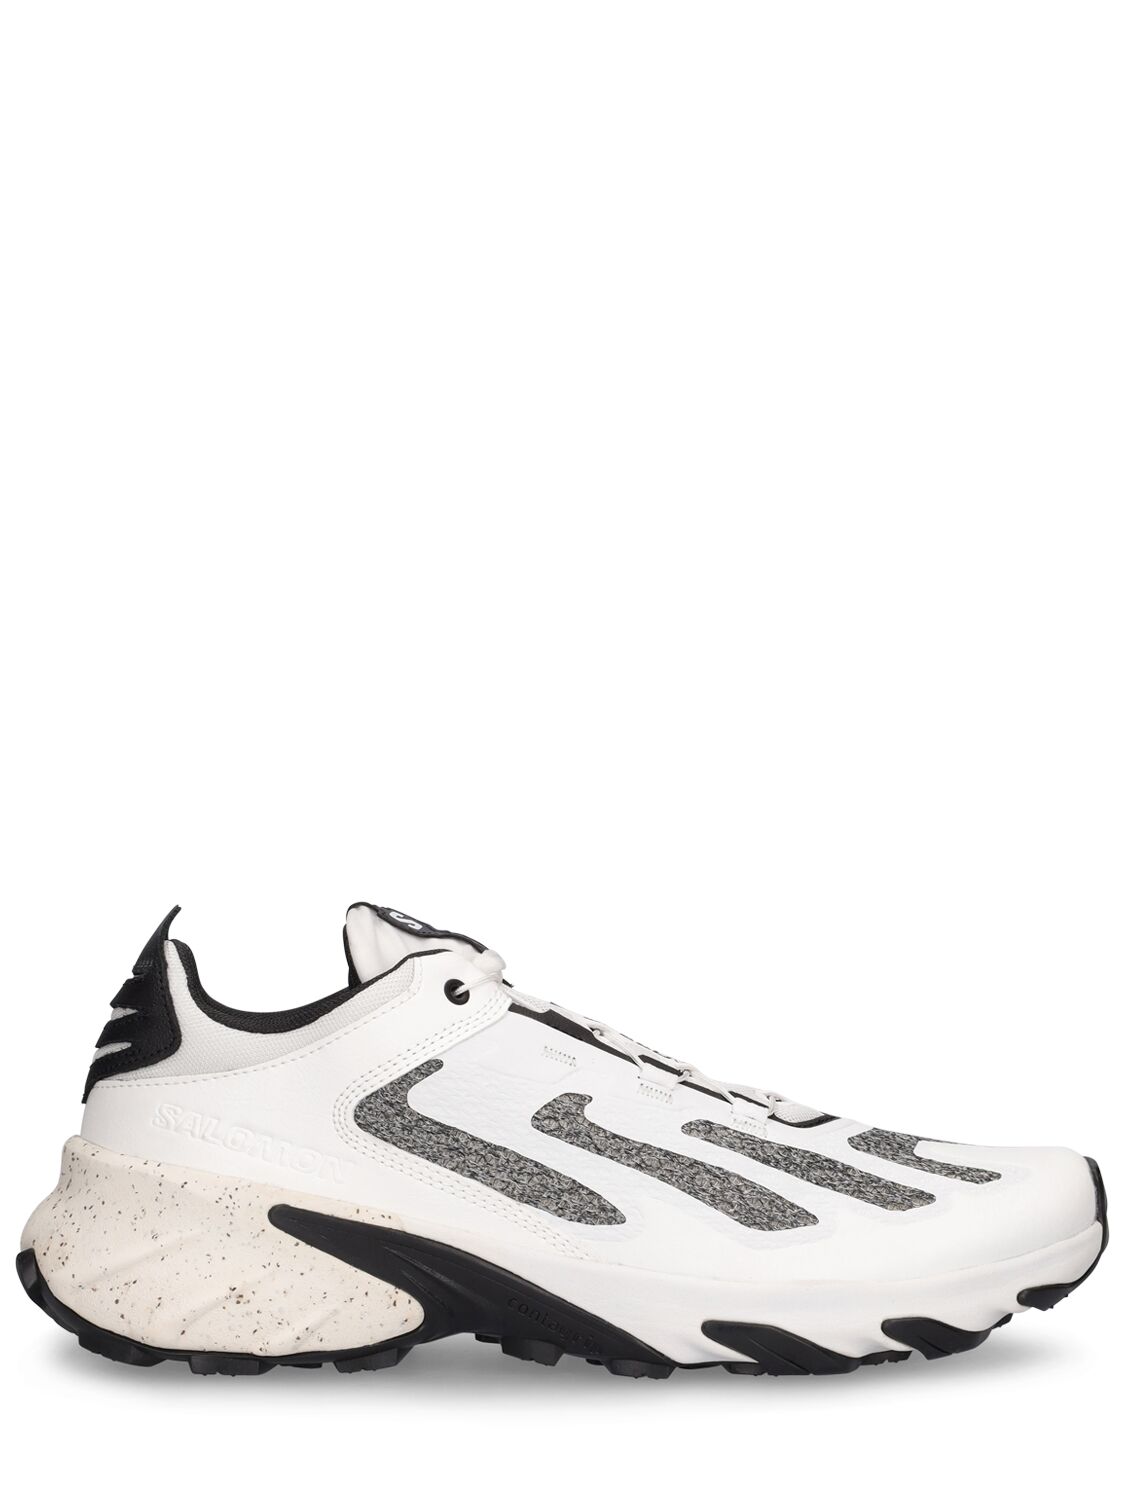 Image of Speedverse Prg Sneakers